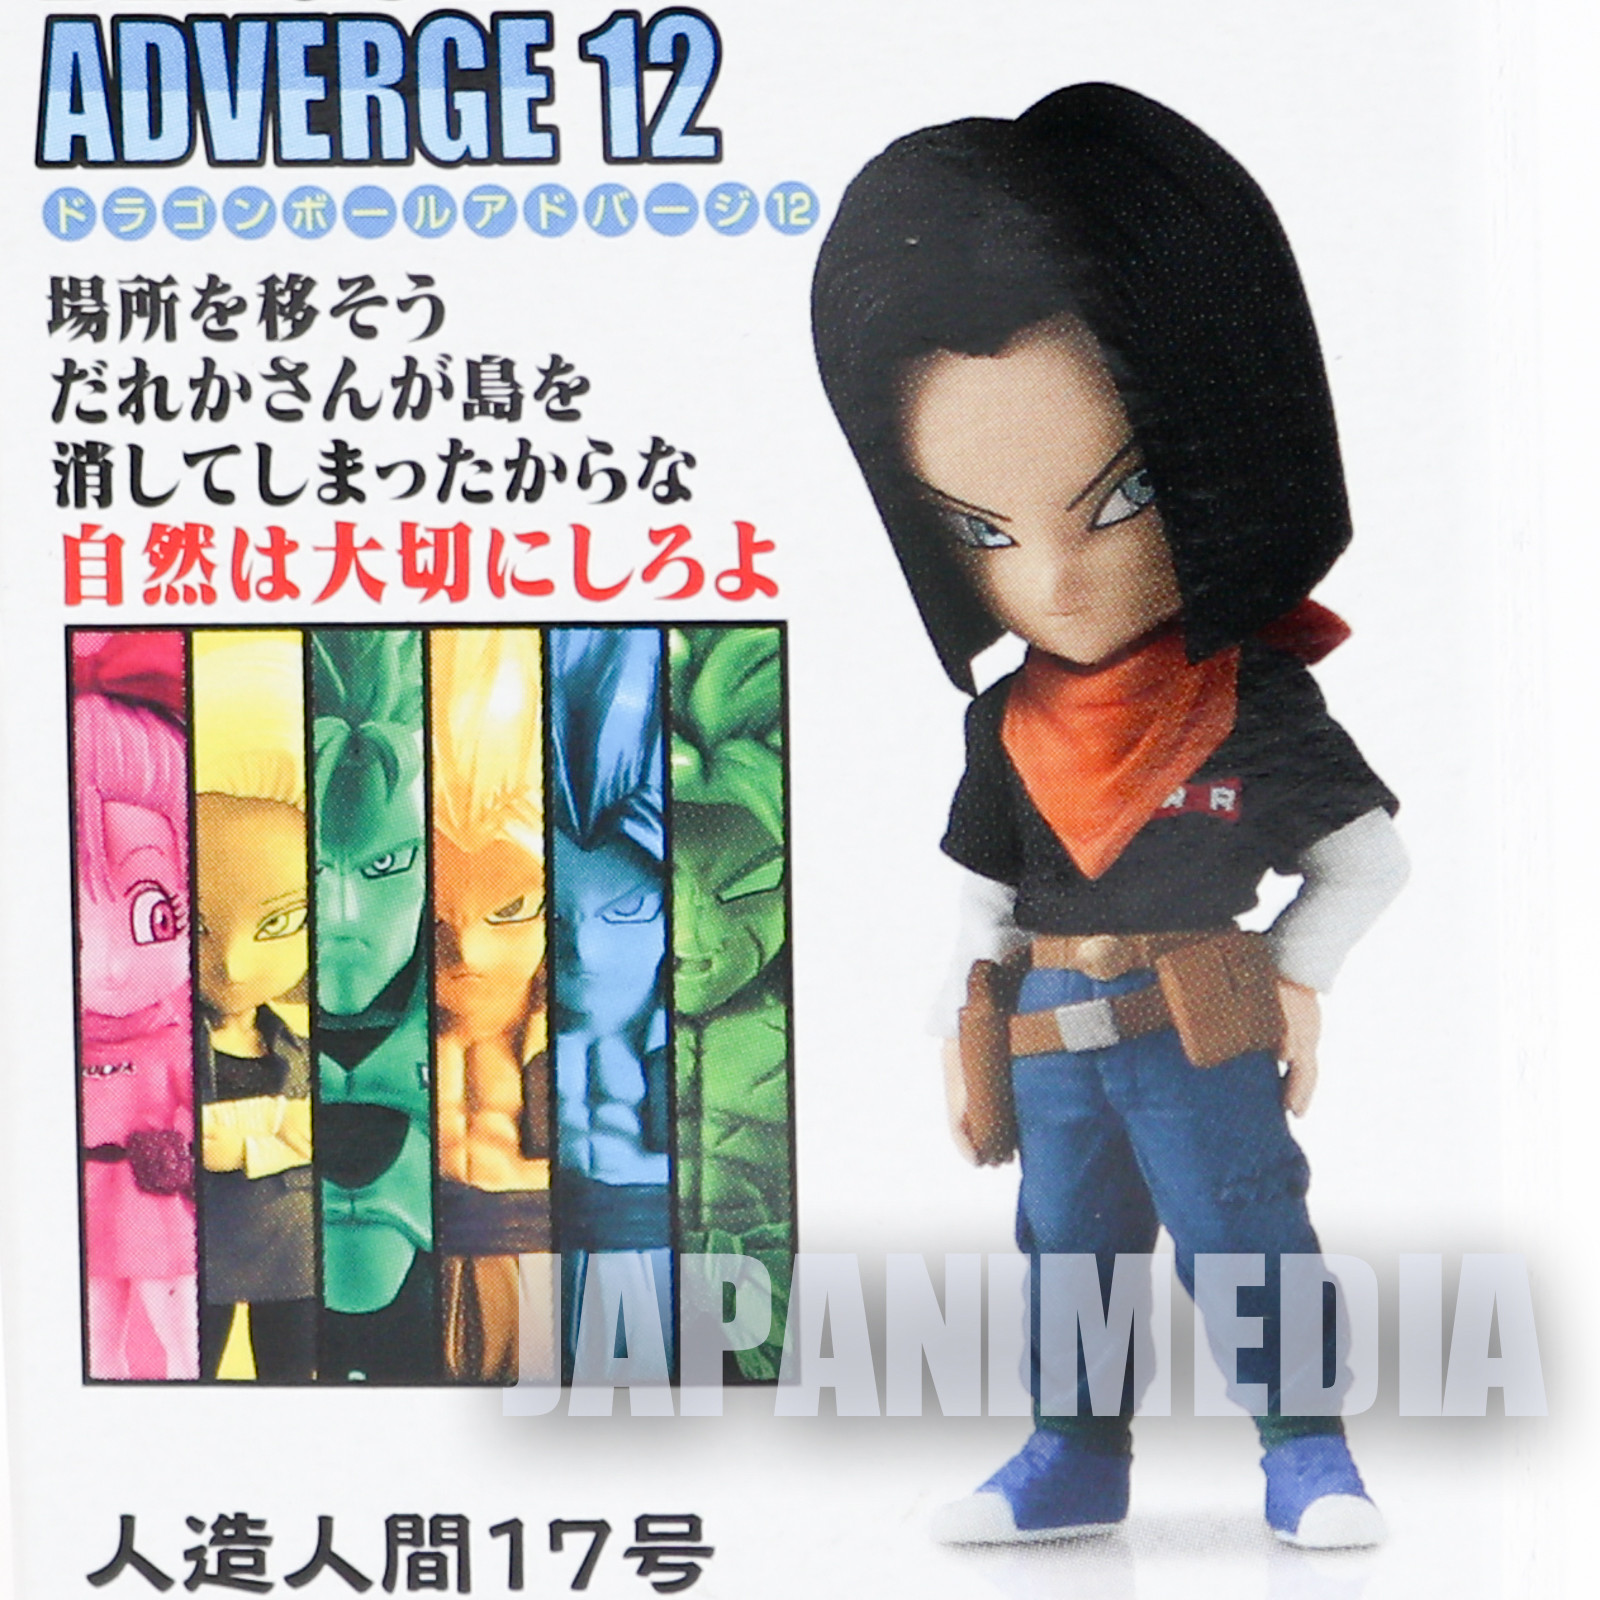 Dragon Ball Super Android 17 Dragon Ball Adverge 12 Mini Figure BANDAI JAPAN ANIME MANGA